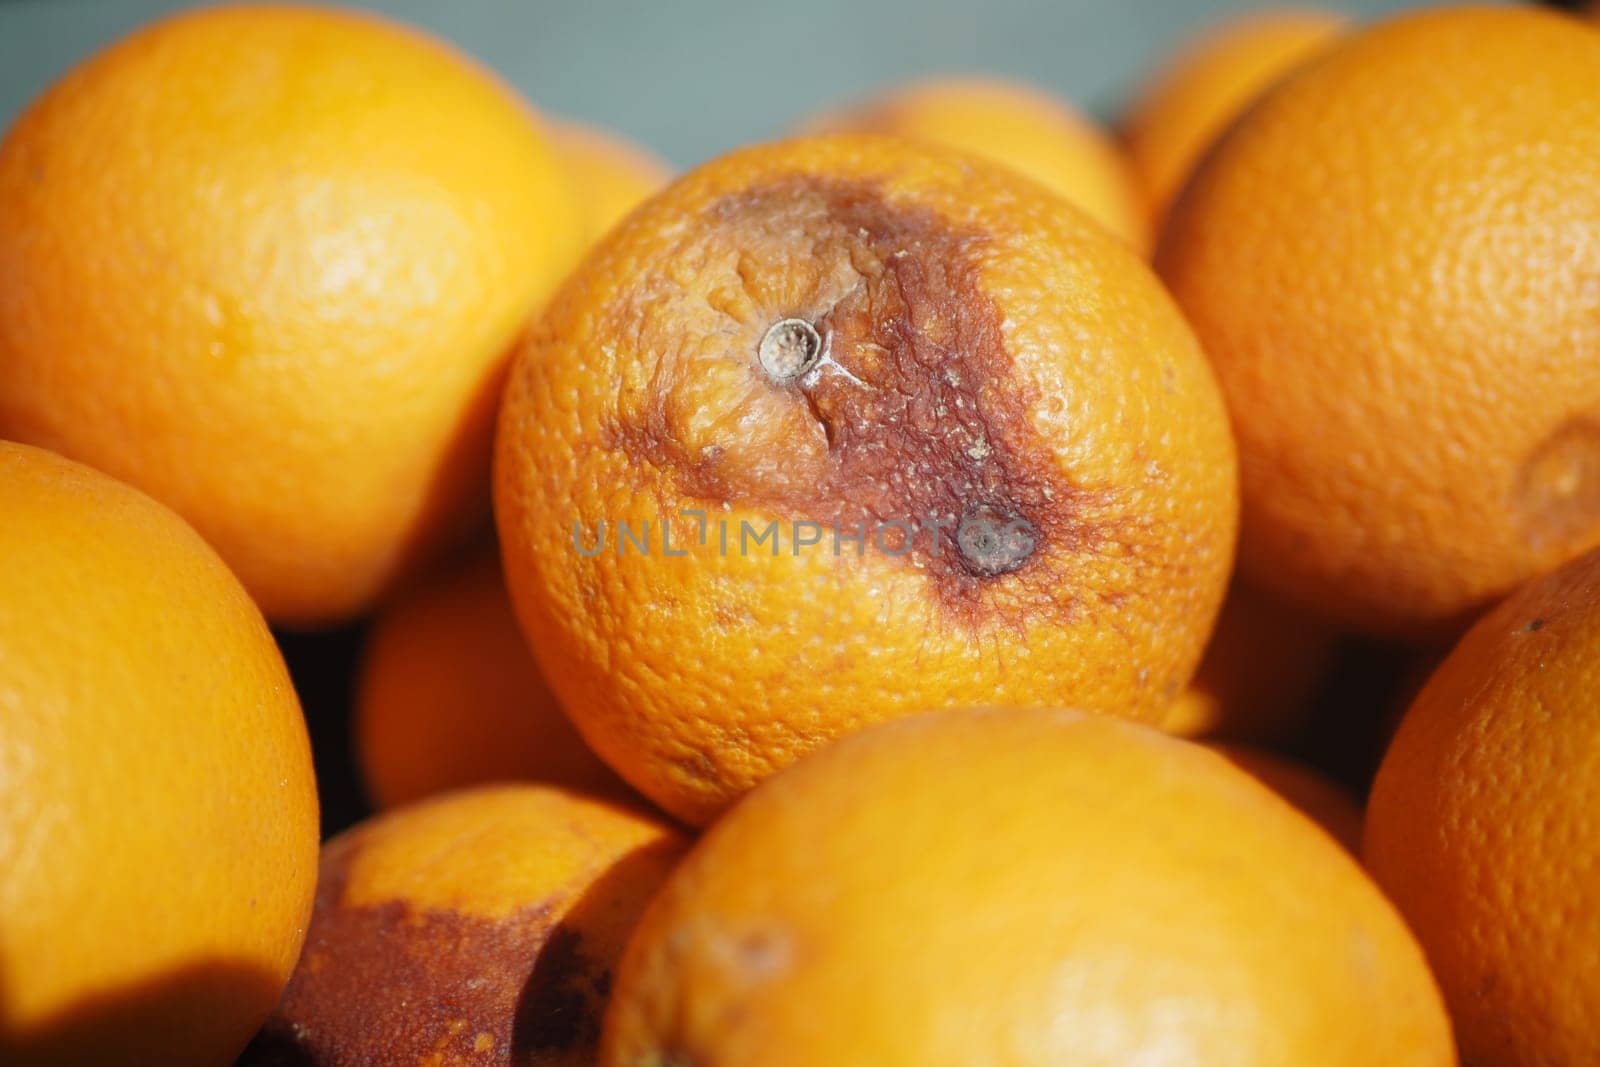 Rotten orange. Moldy orange on table .